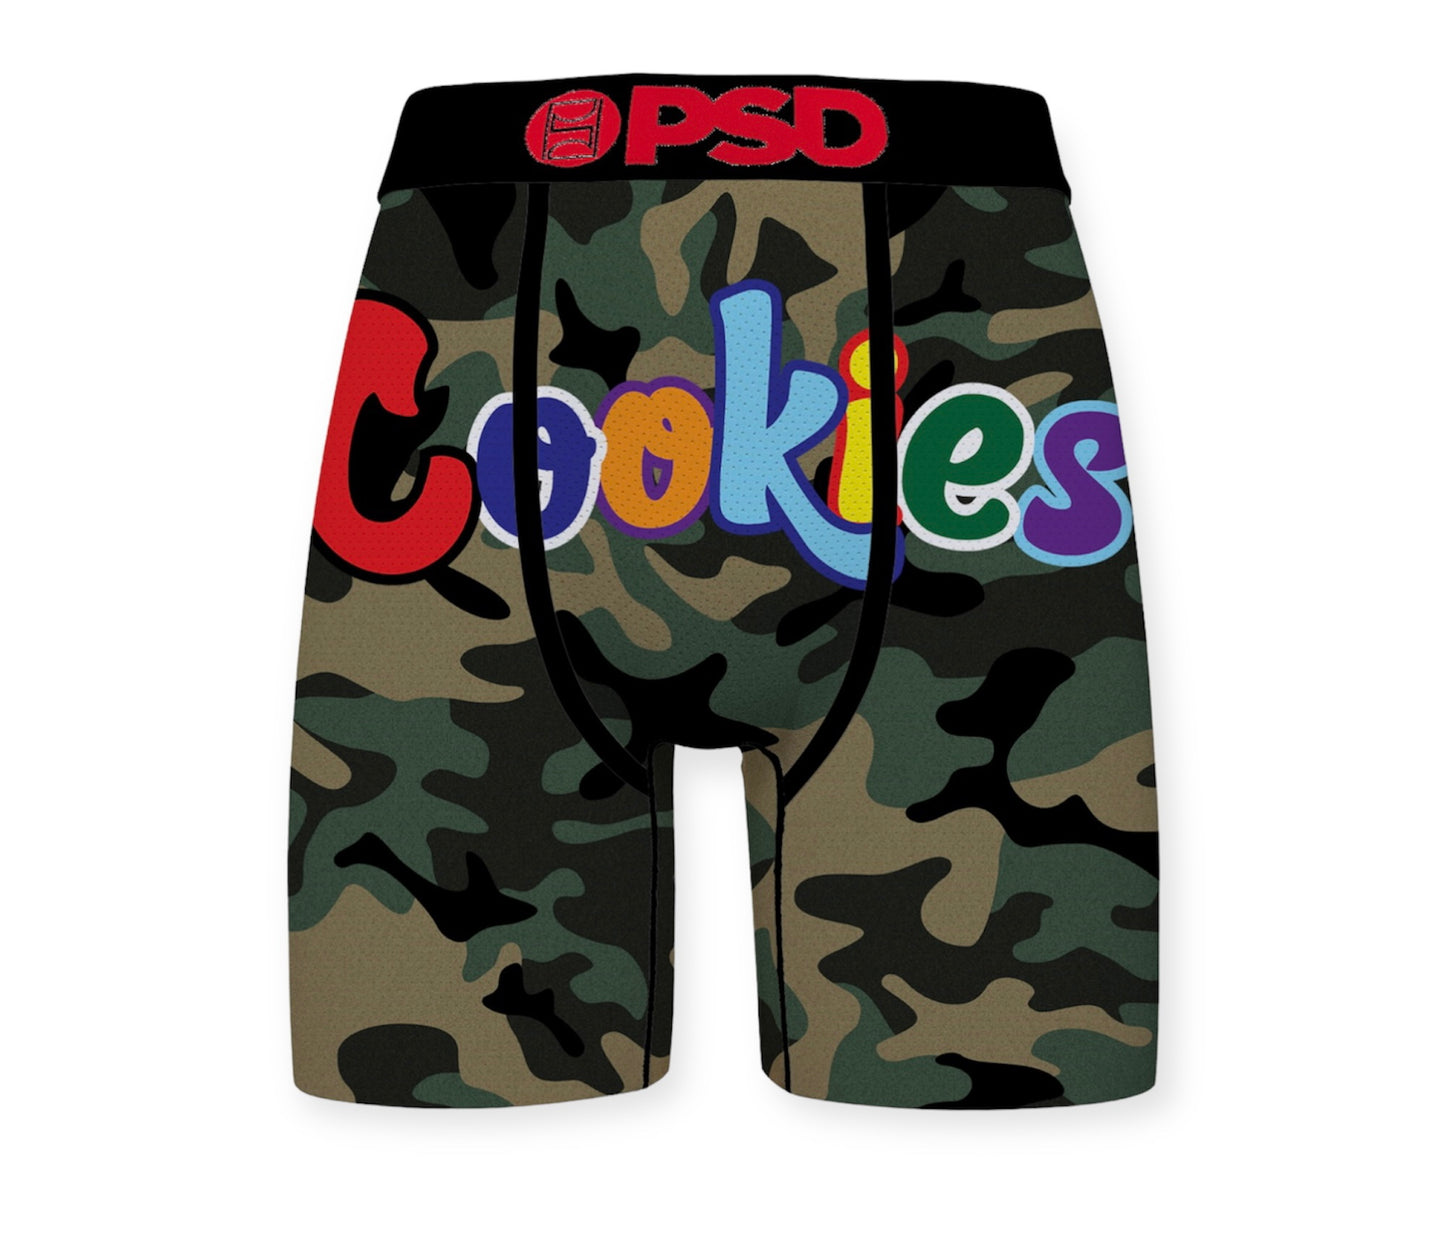 PSD COOKIES CAMO Men's Underwear